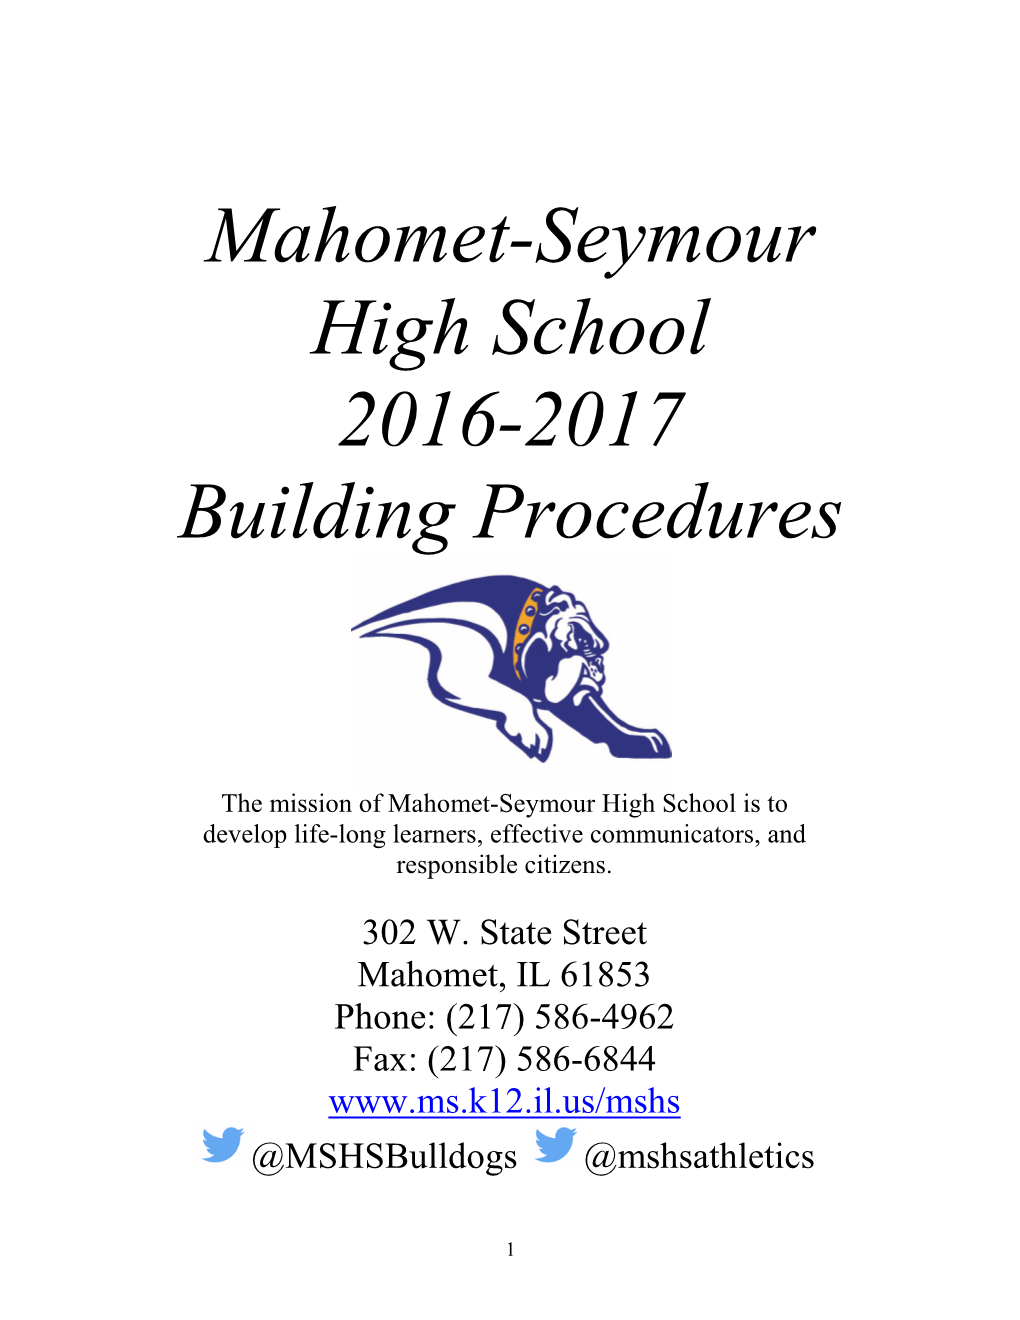 Mahomet-Seymour High School 2016-2017 Building Procedures